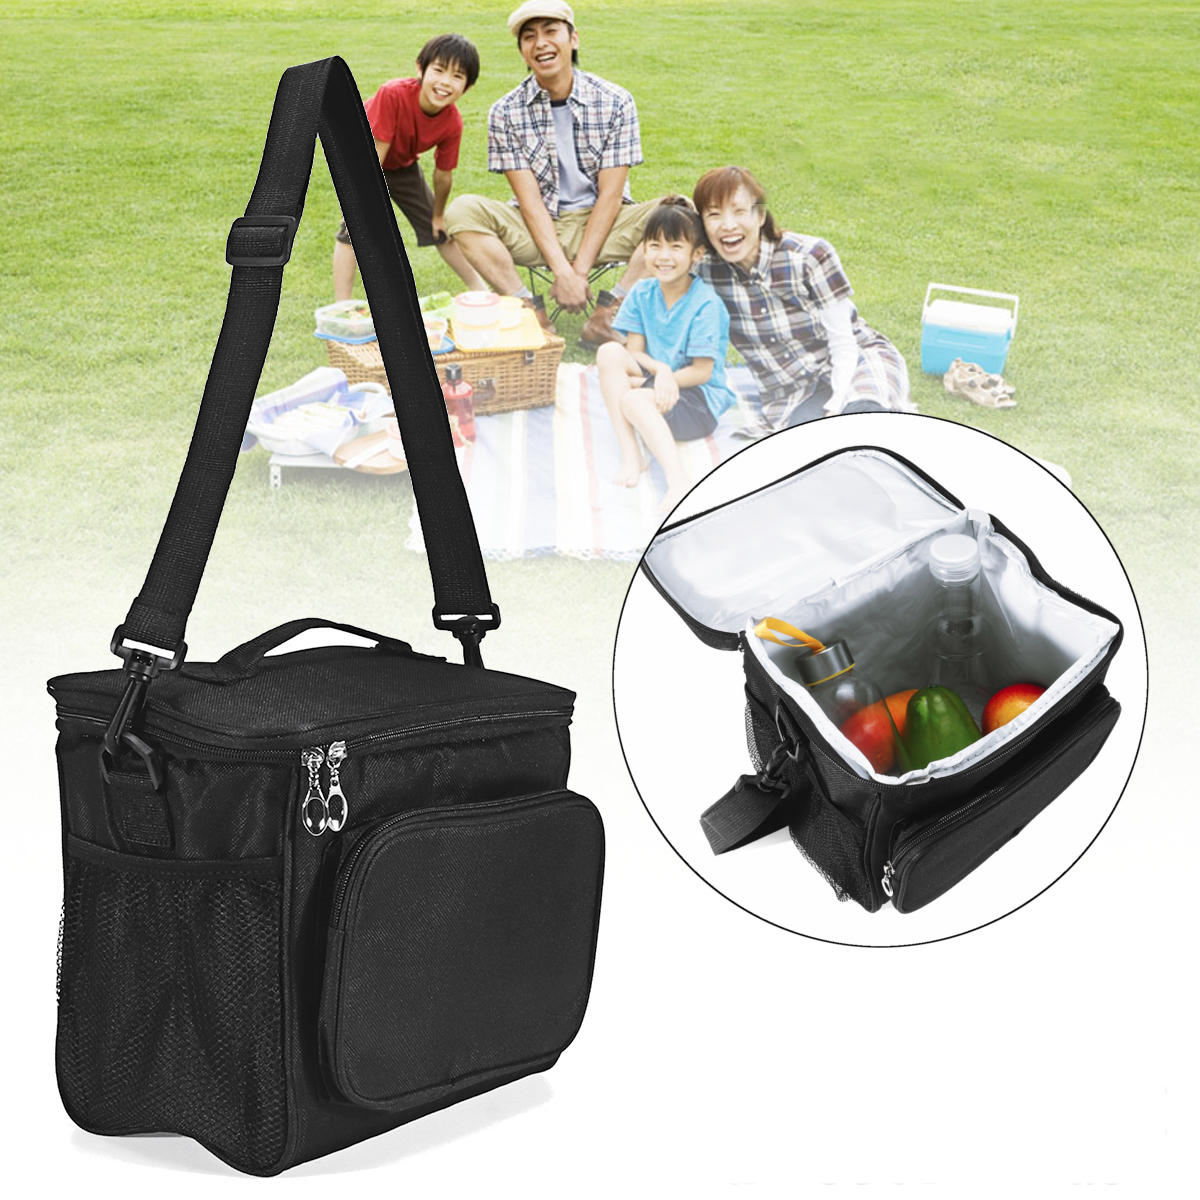 0-литровая сумка для пикника, обеденная плечевая сумка, водонепроницаемая термо-сумка, холодильник для хранения продуктов